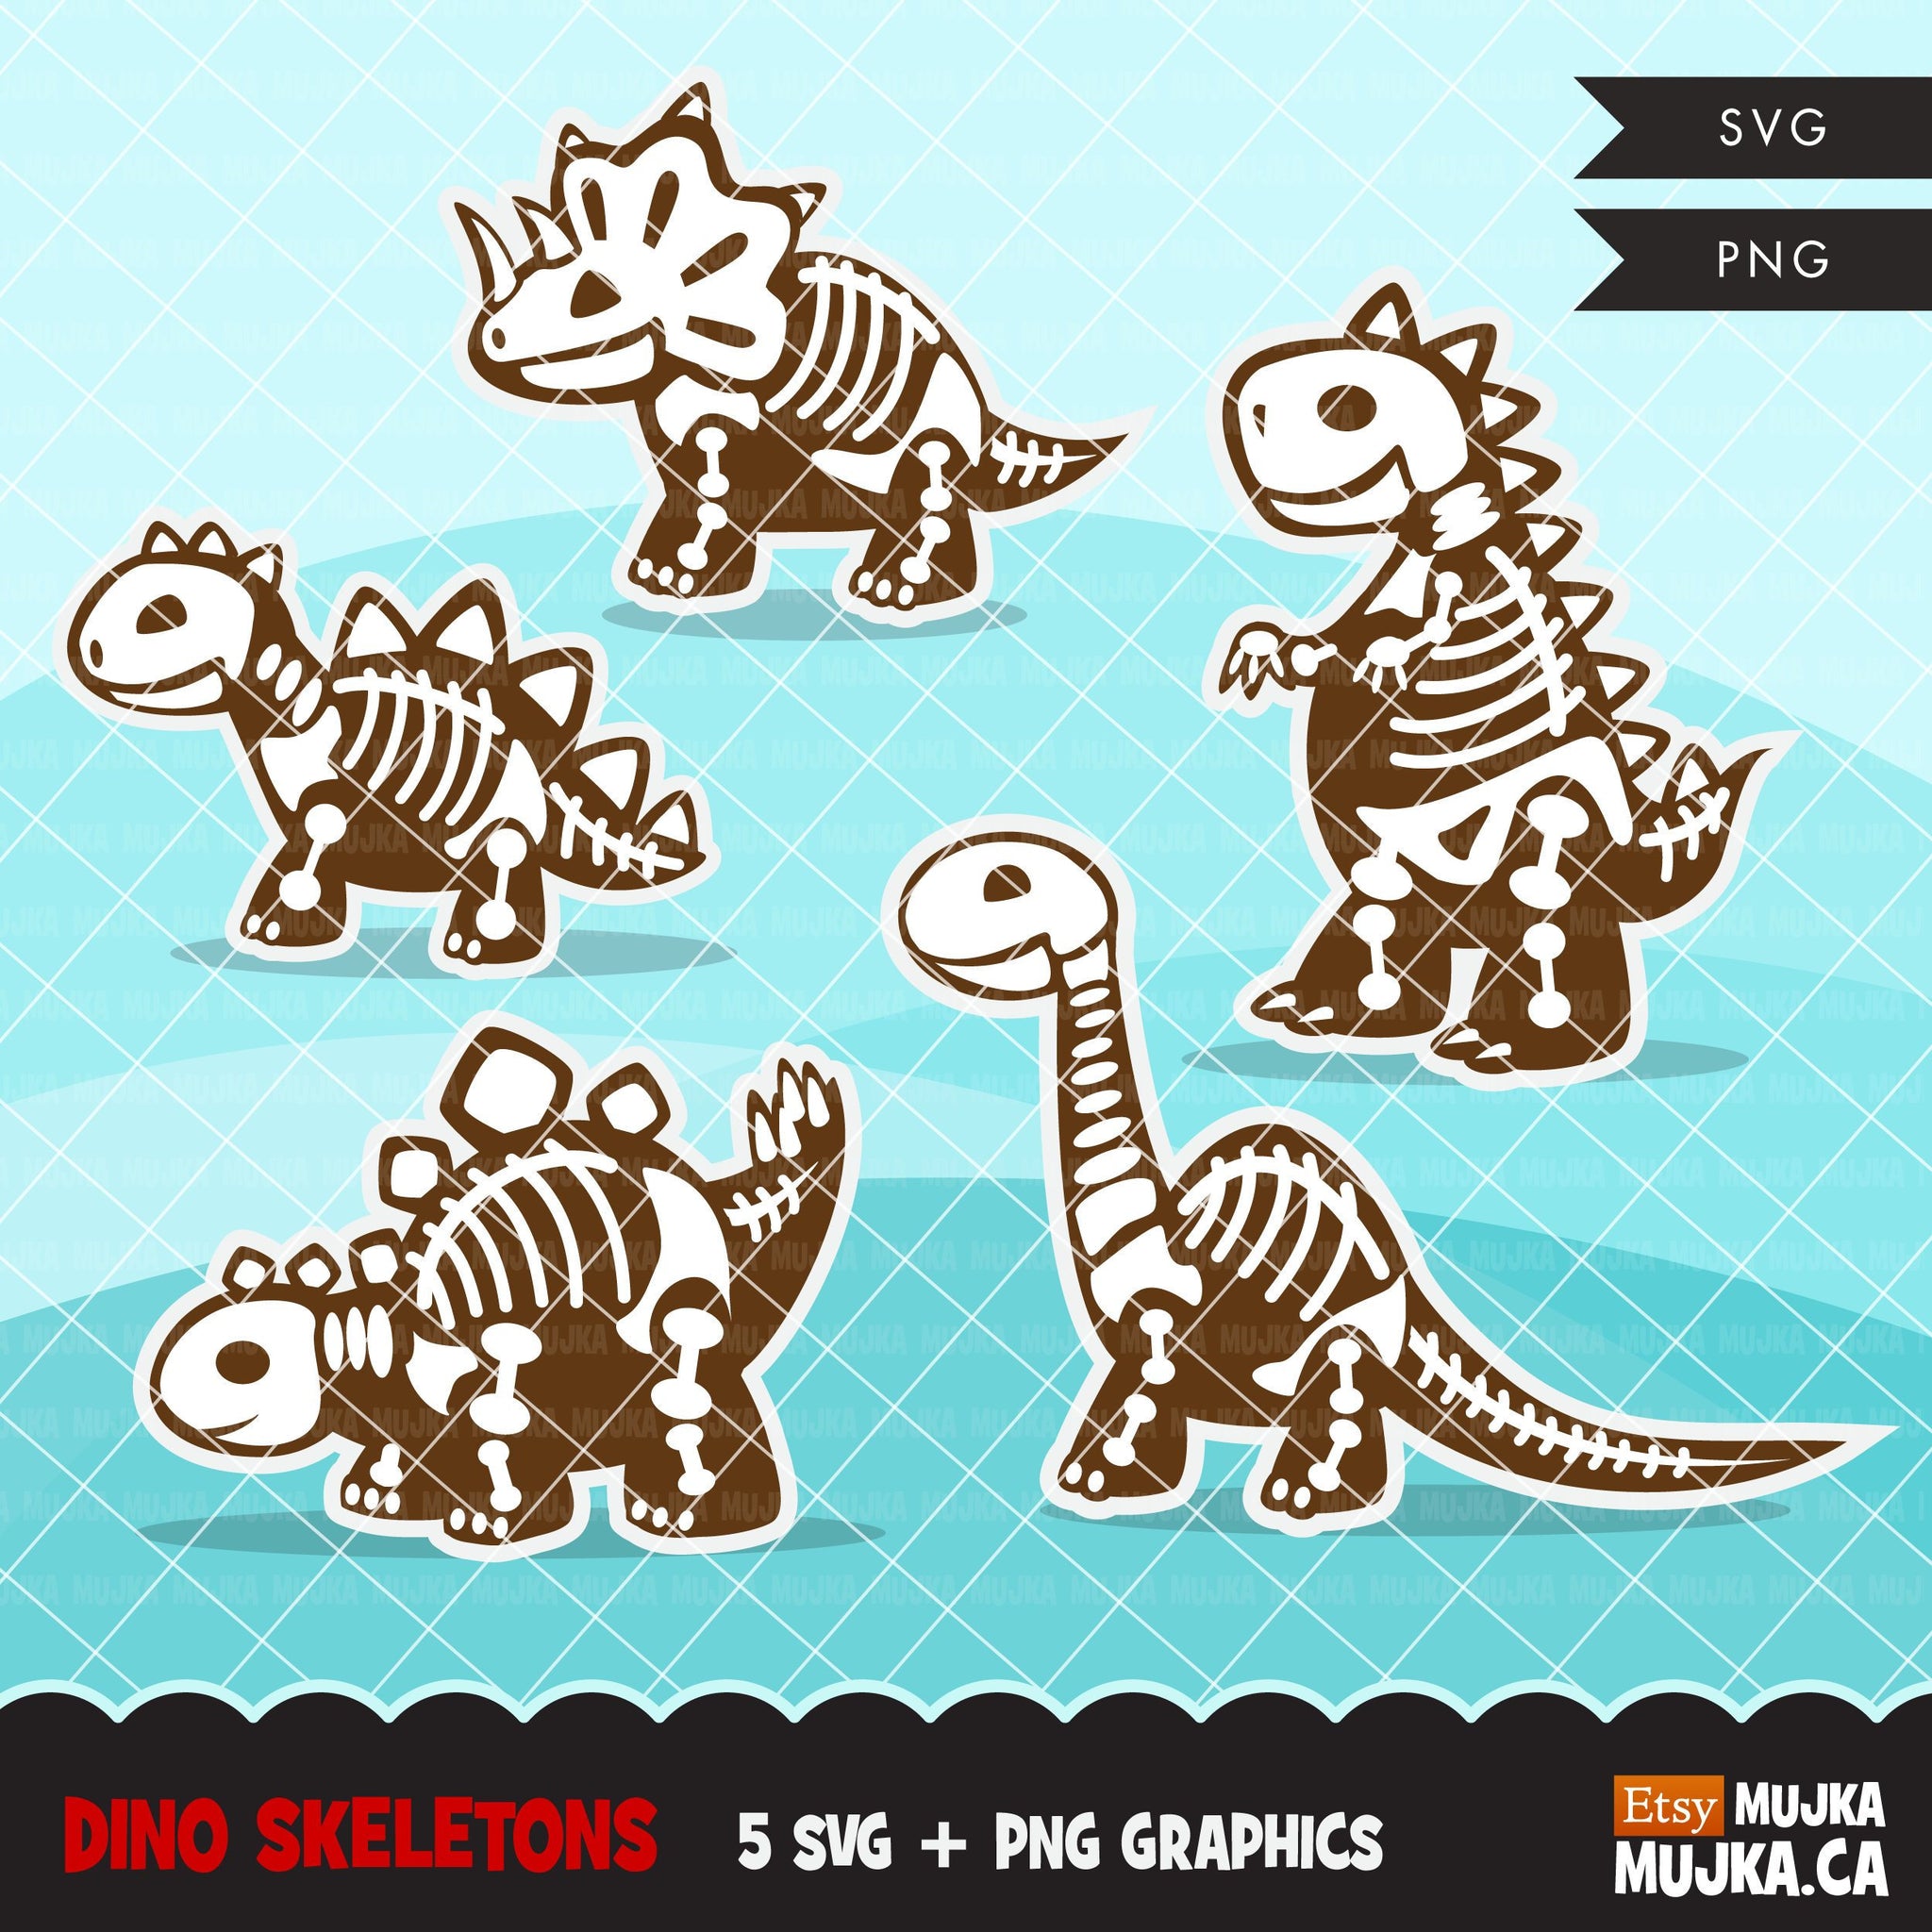 Dinosaur skeleton, animal SVG cutting file